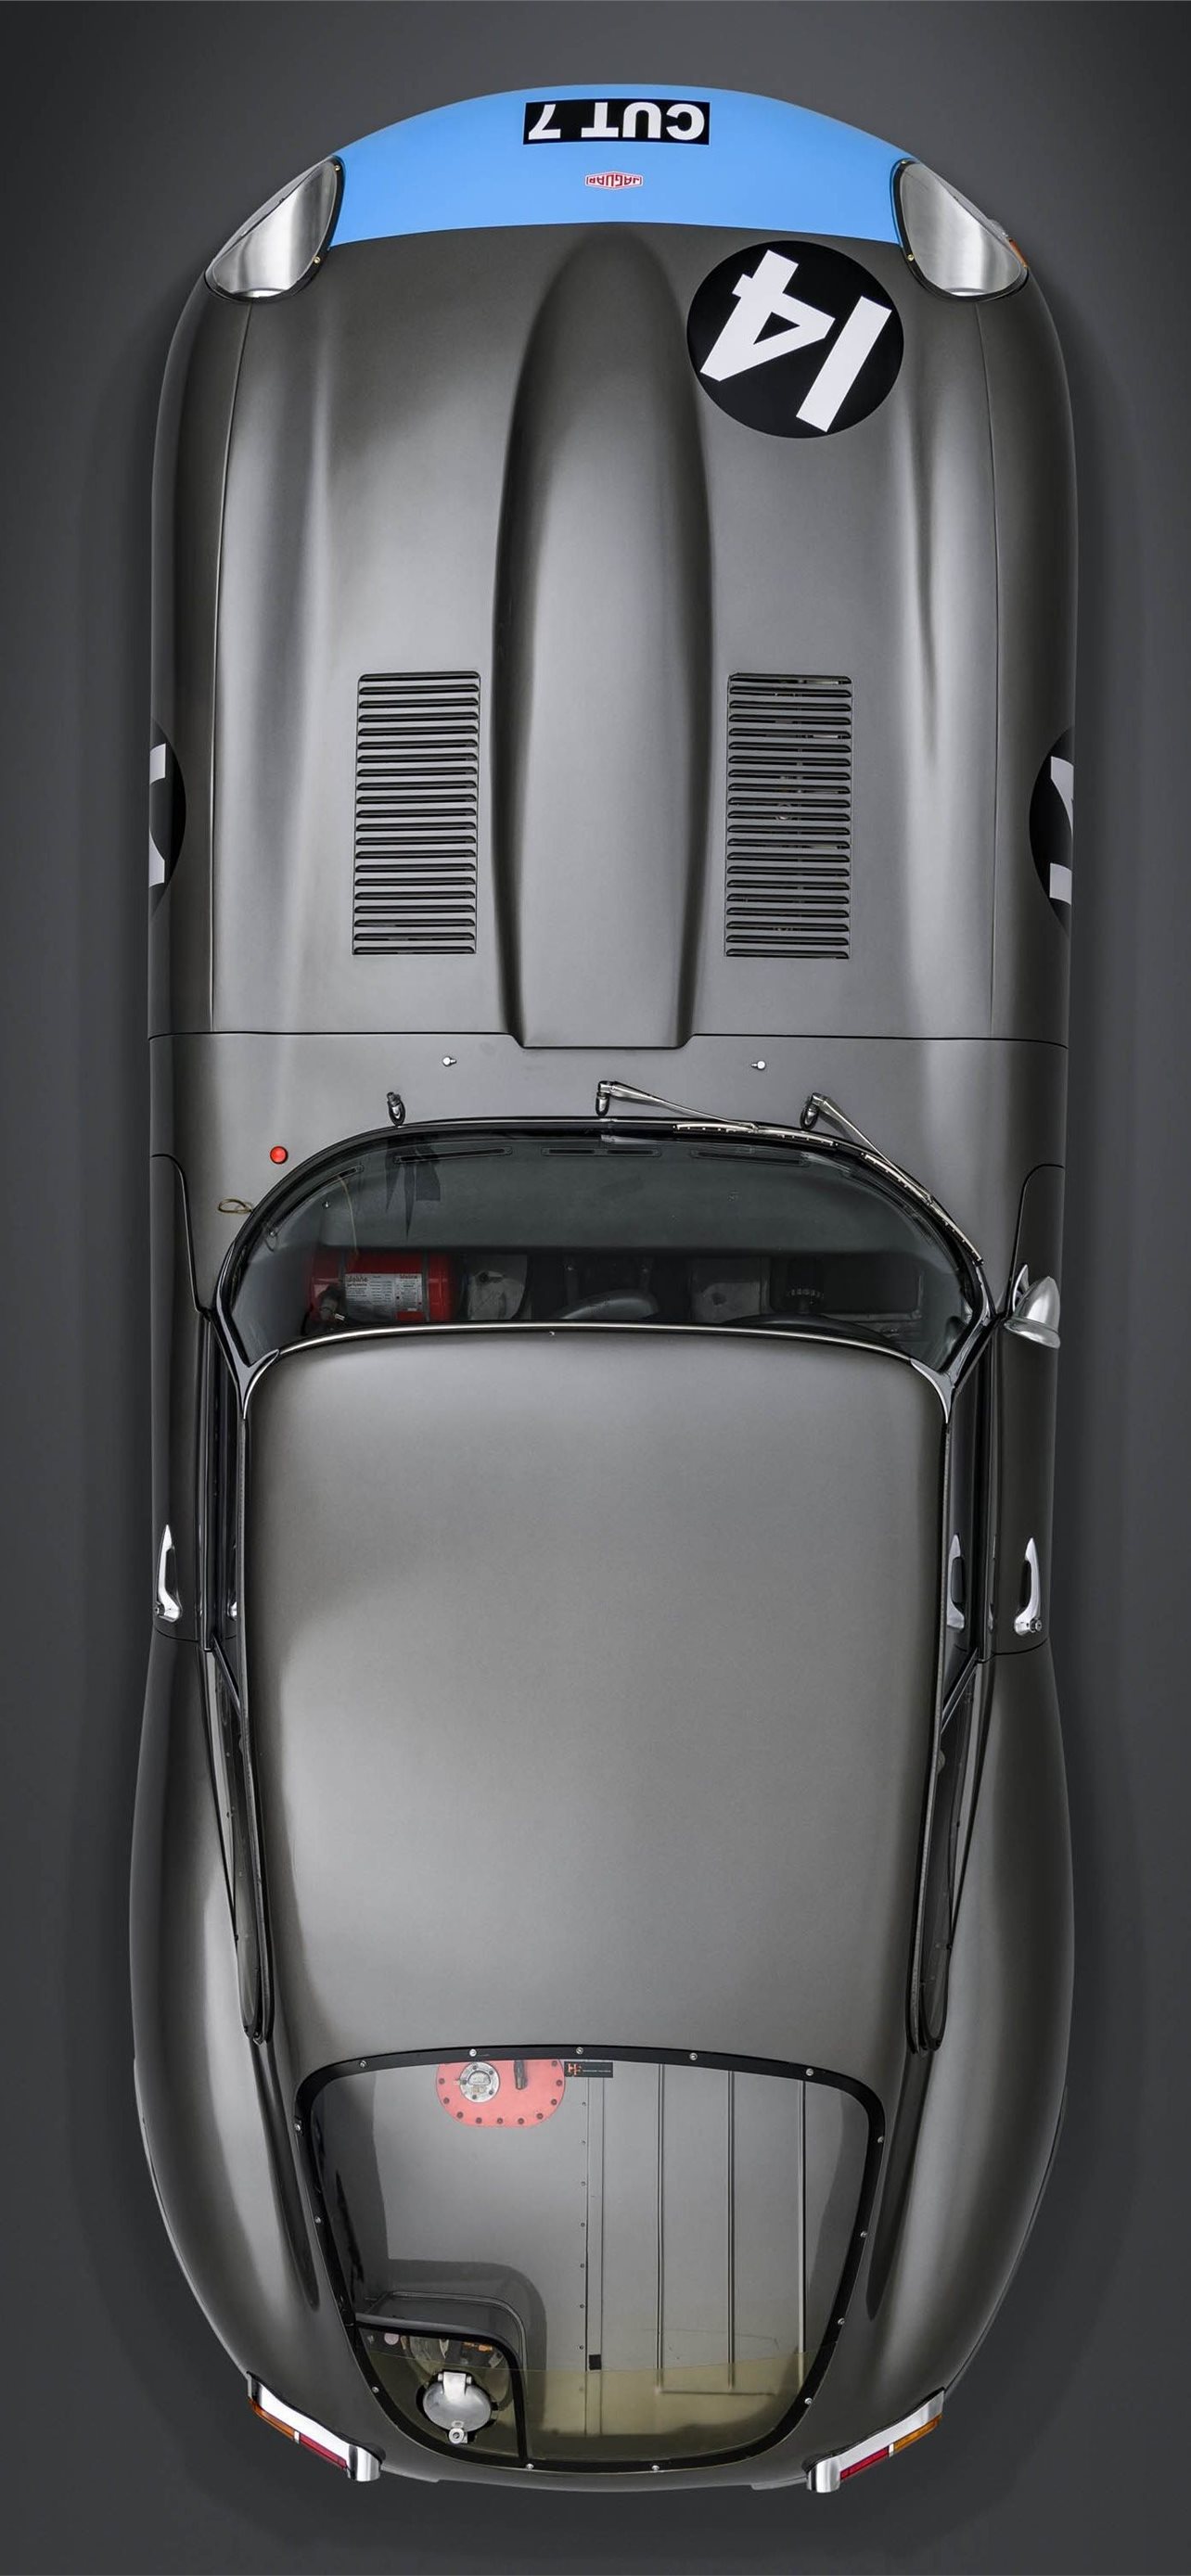 Jaguar Xke Series I Wallpapers